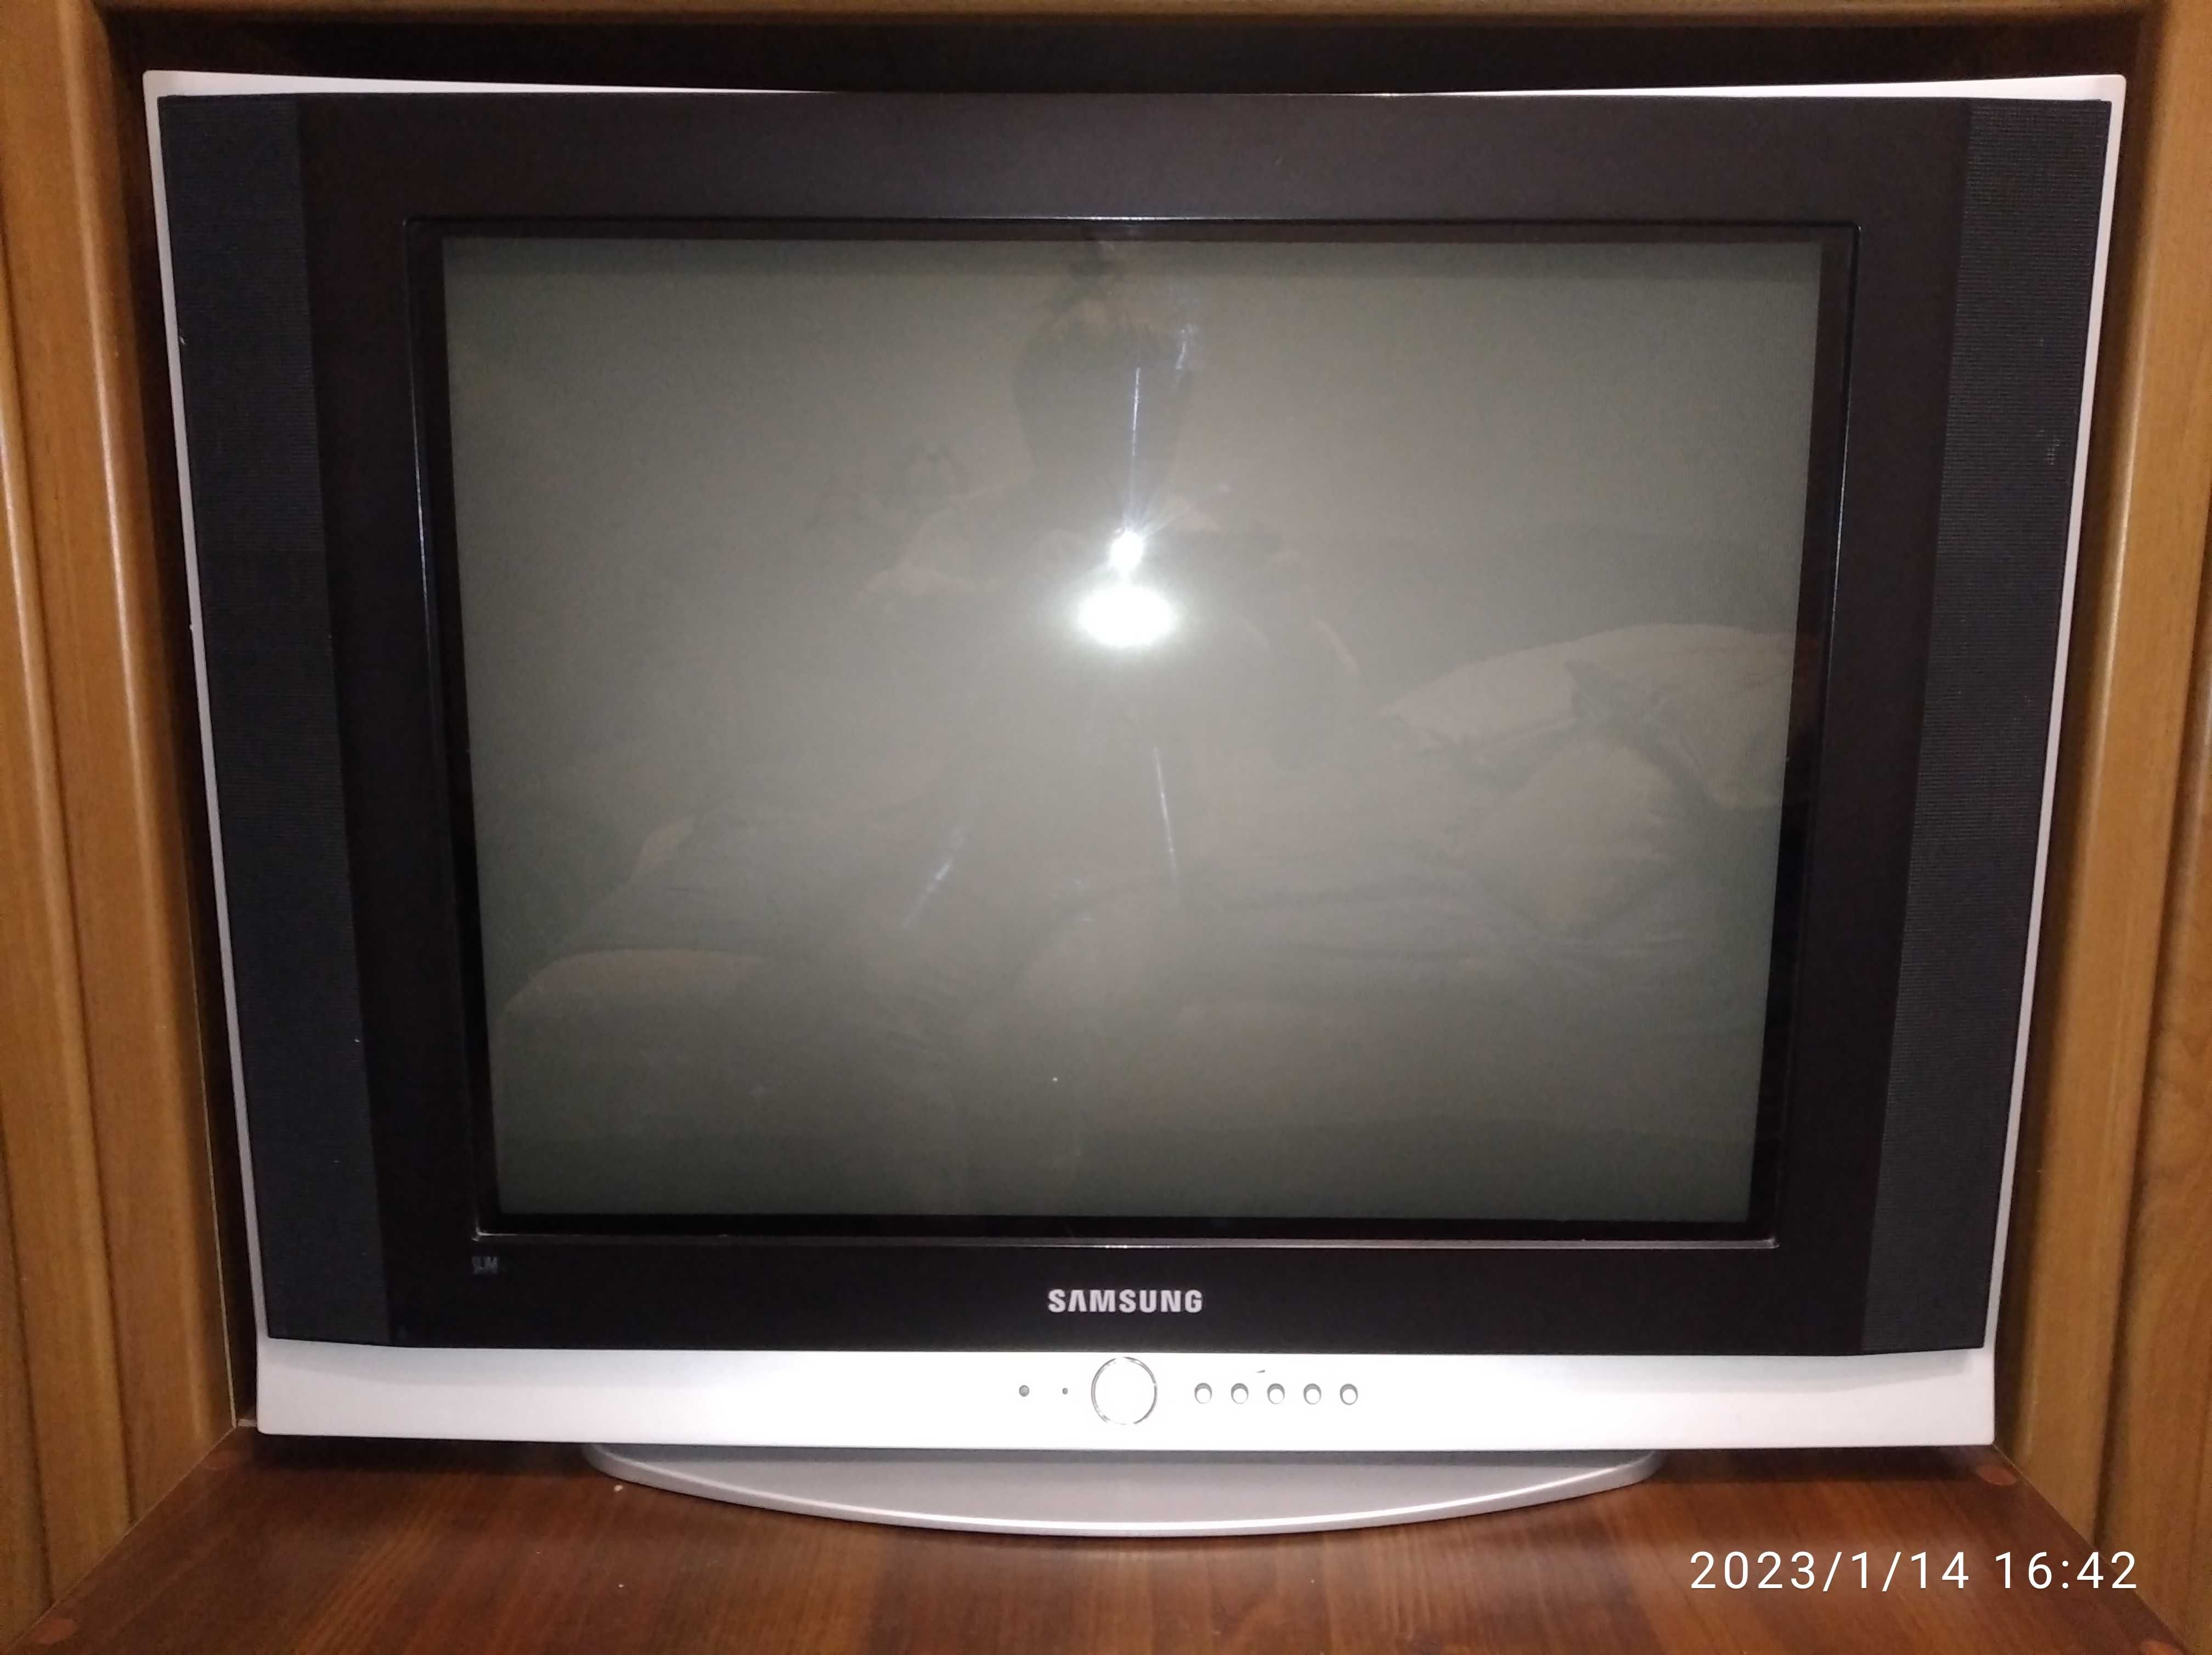 Телевизор Samsung CS-29Z40ZQQ